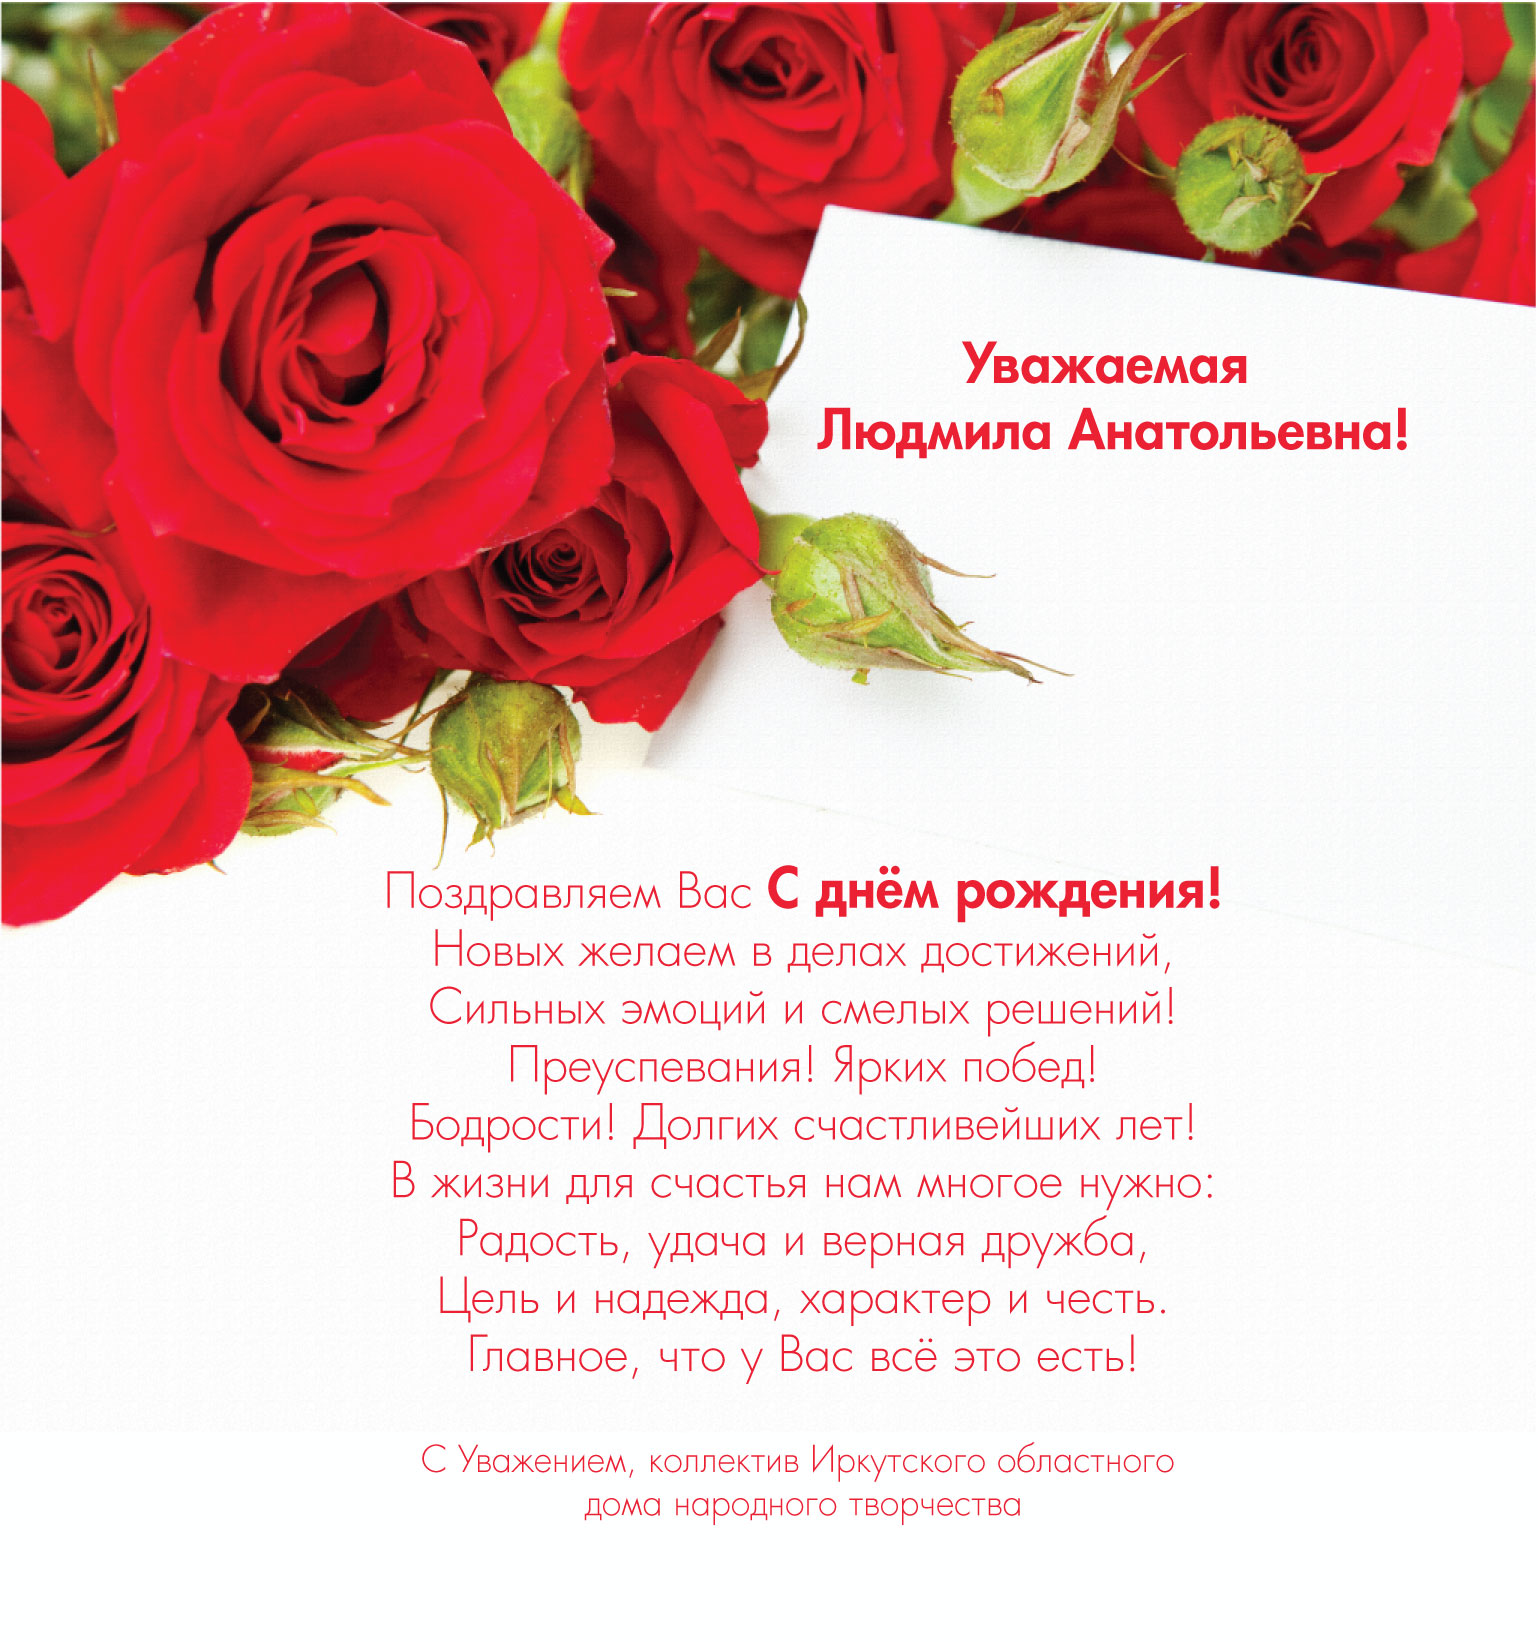 Поздравления С Днем Рождения Женщине Людмиле Николаевне